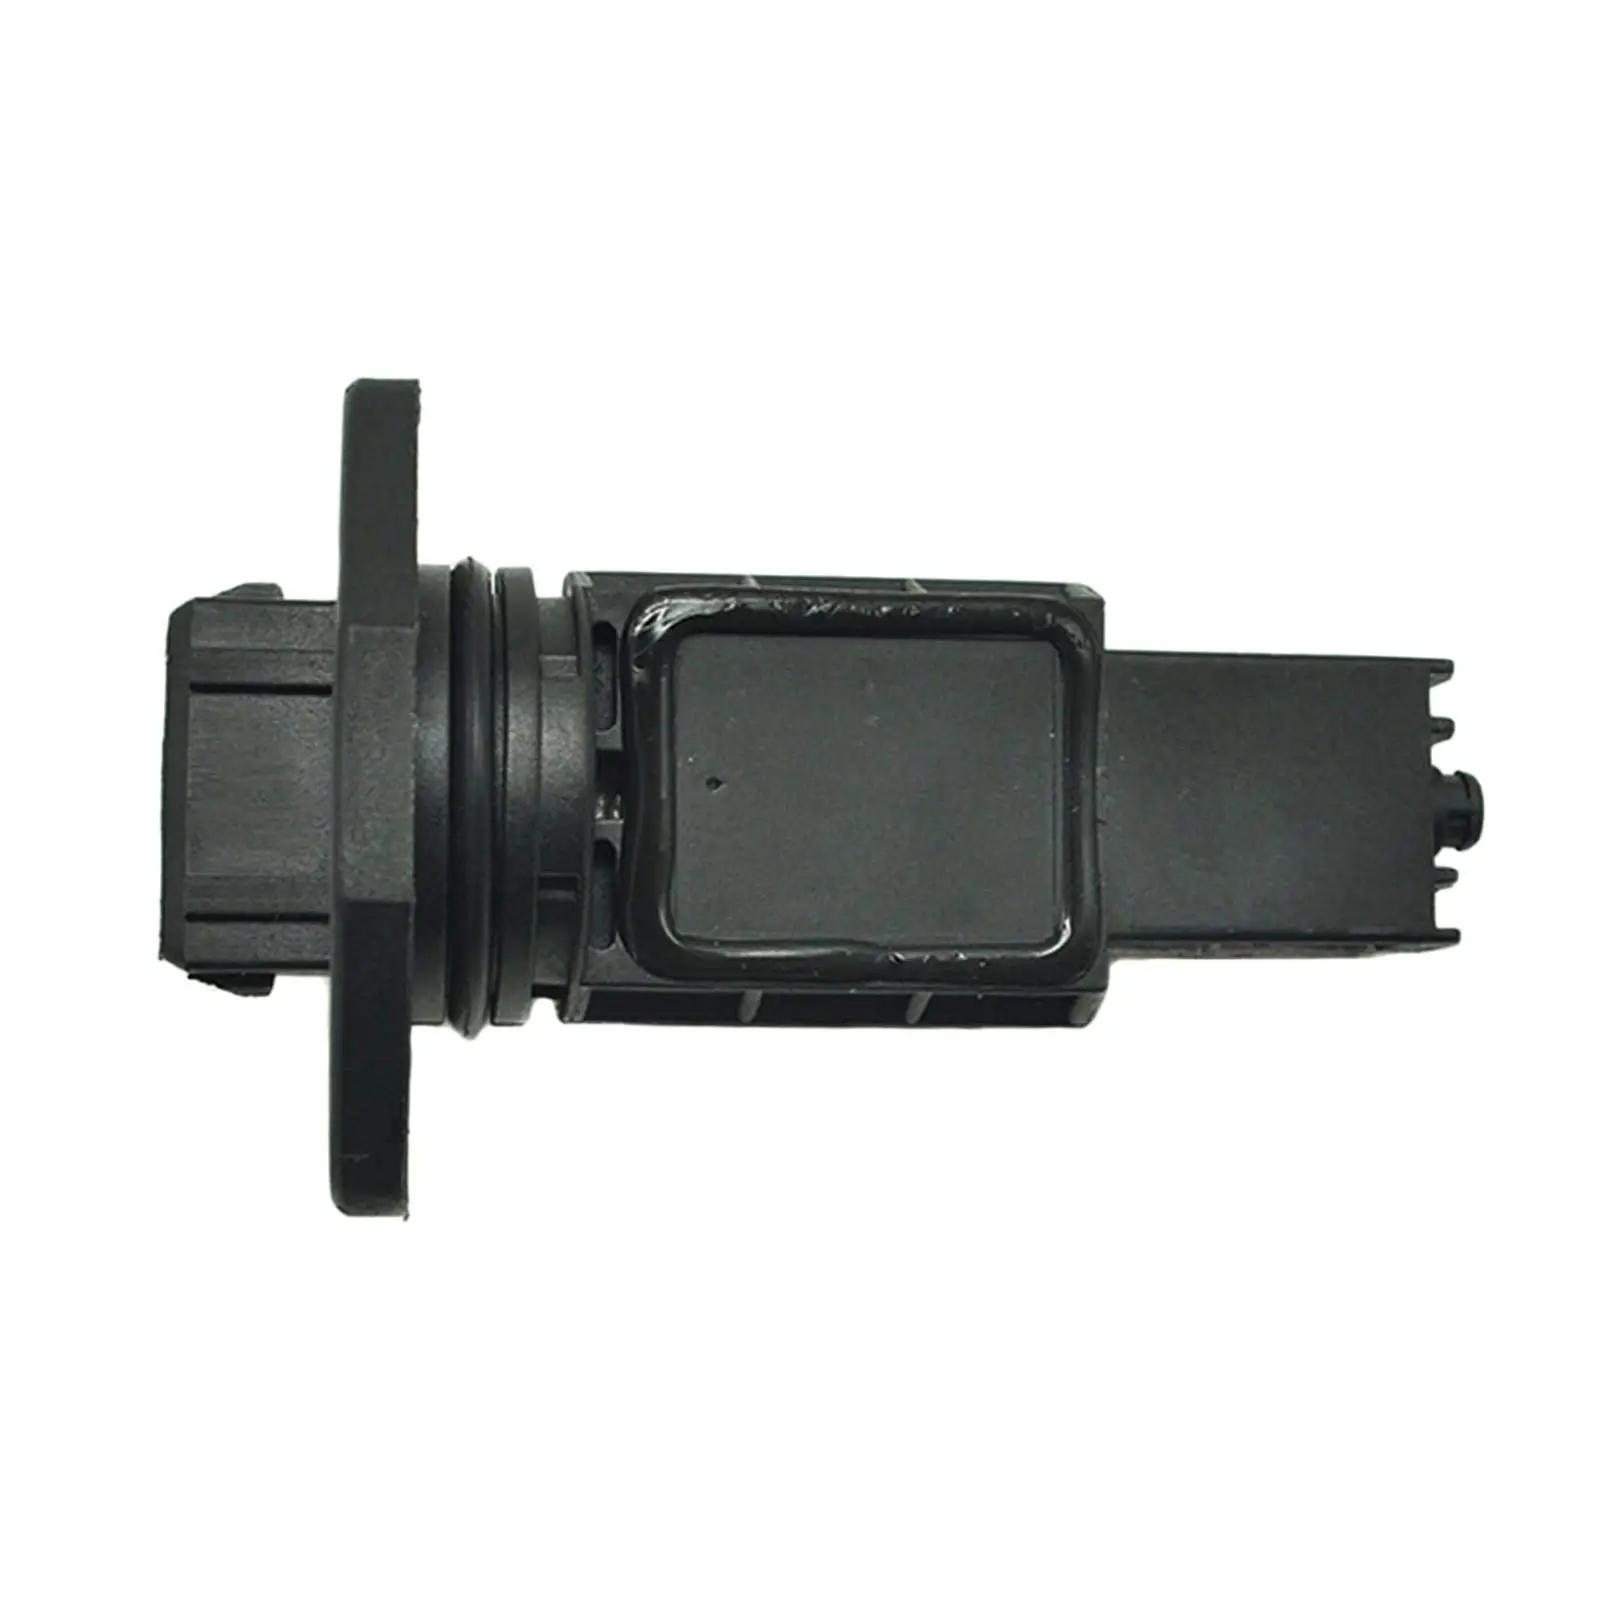 Mass Air Flow Sensor Plastic Black Vehicle Parts Maf, Fit for Audi A8 0280217804, 077133471D